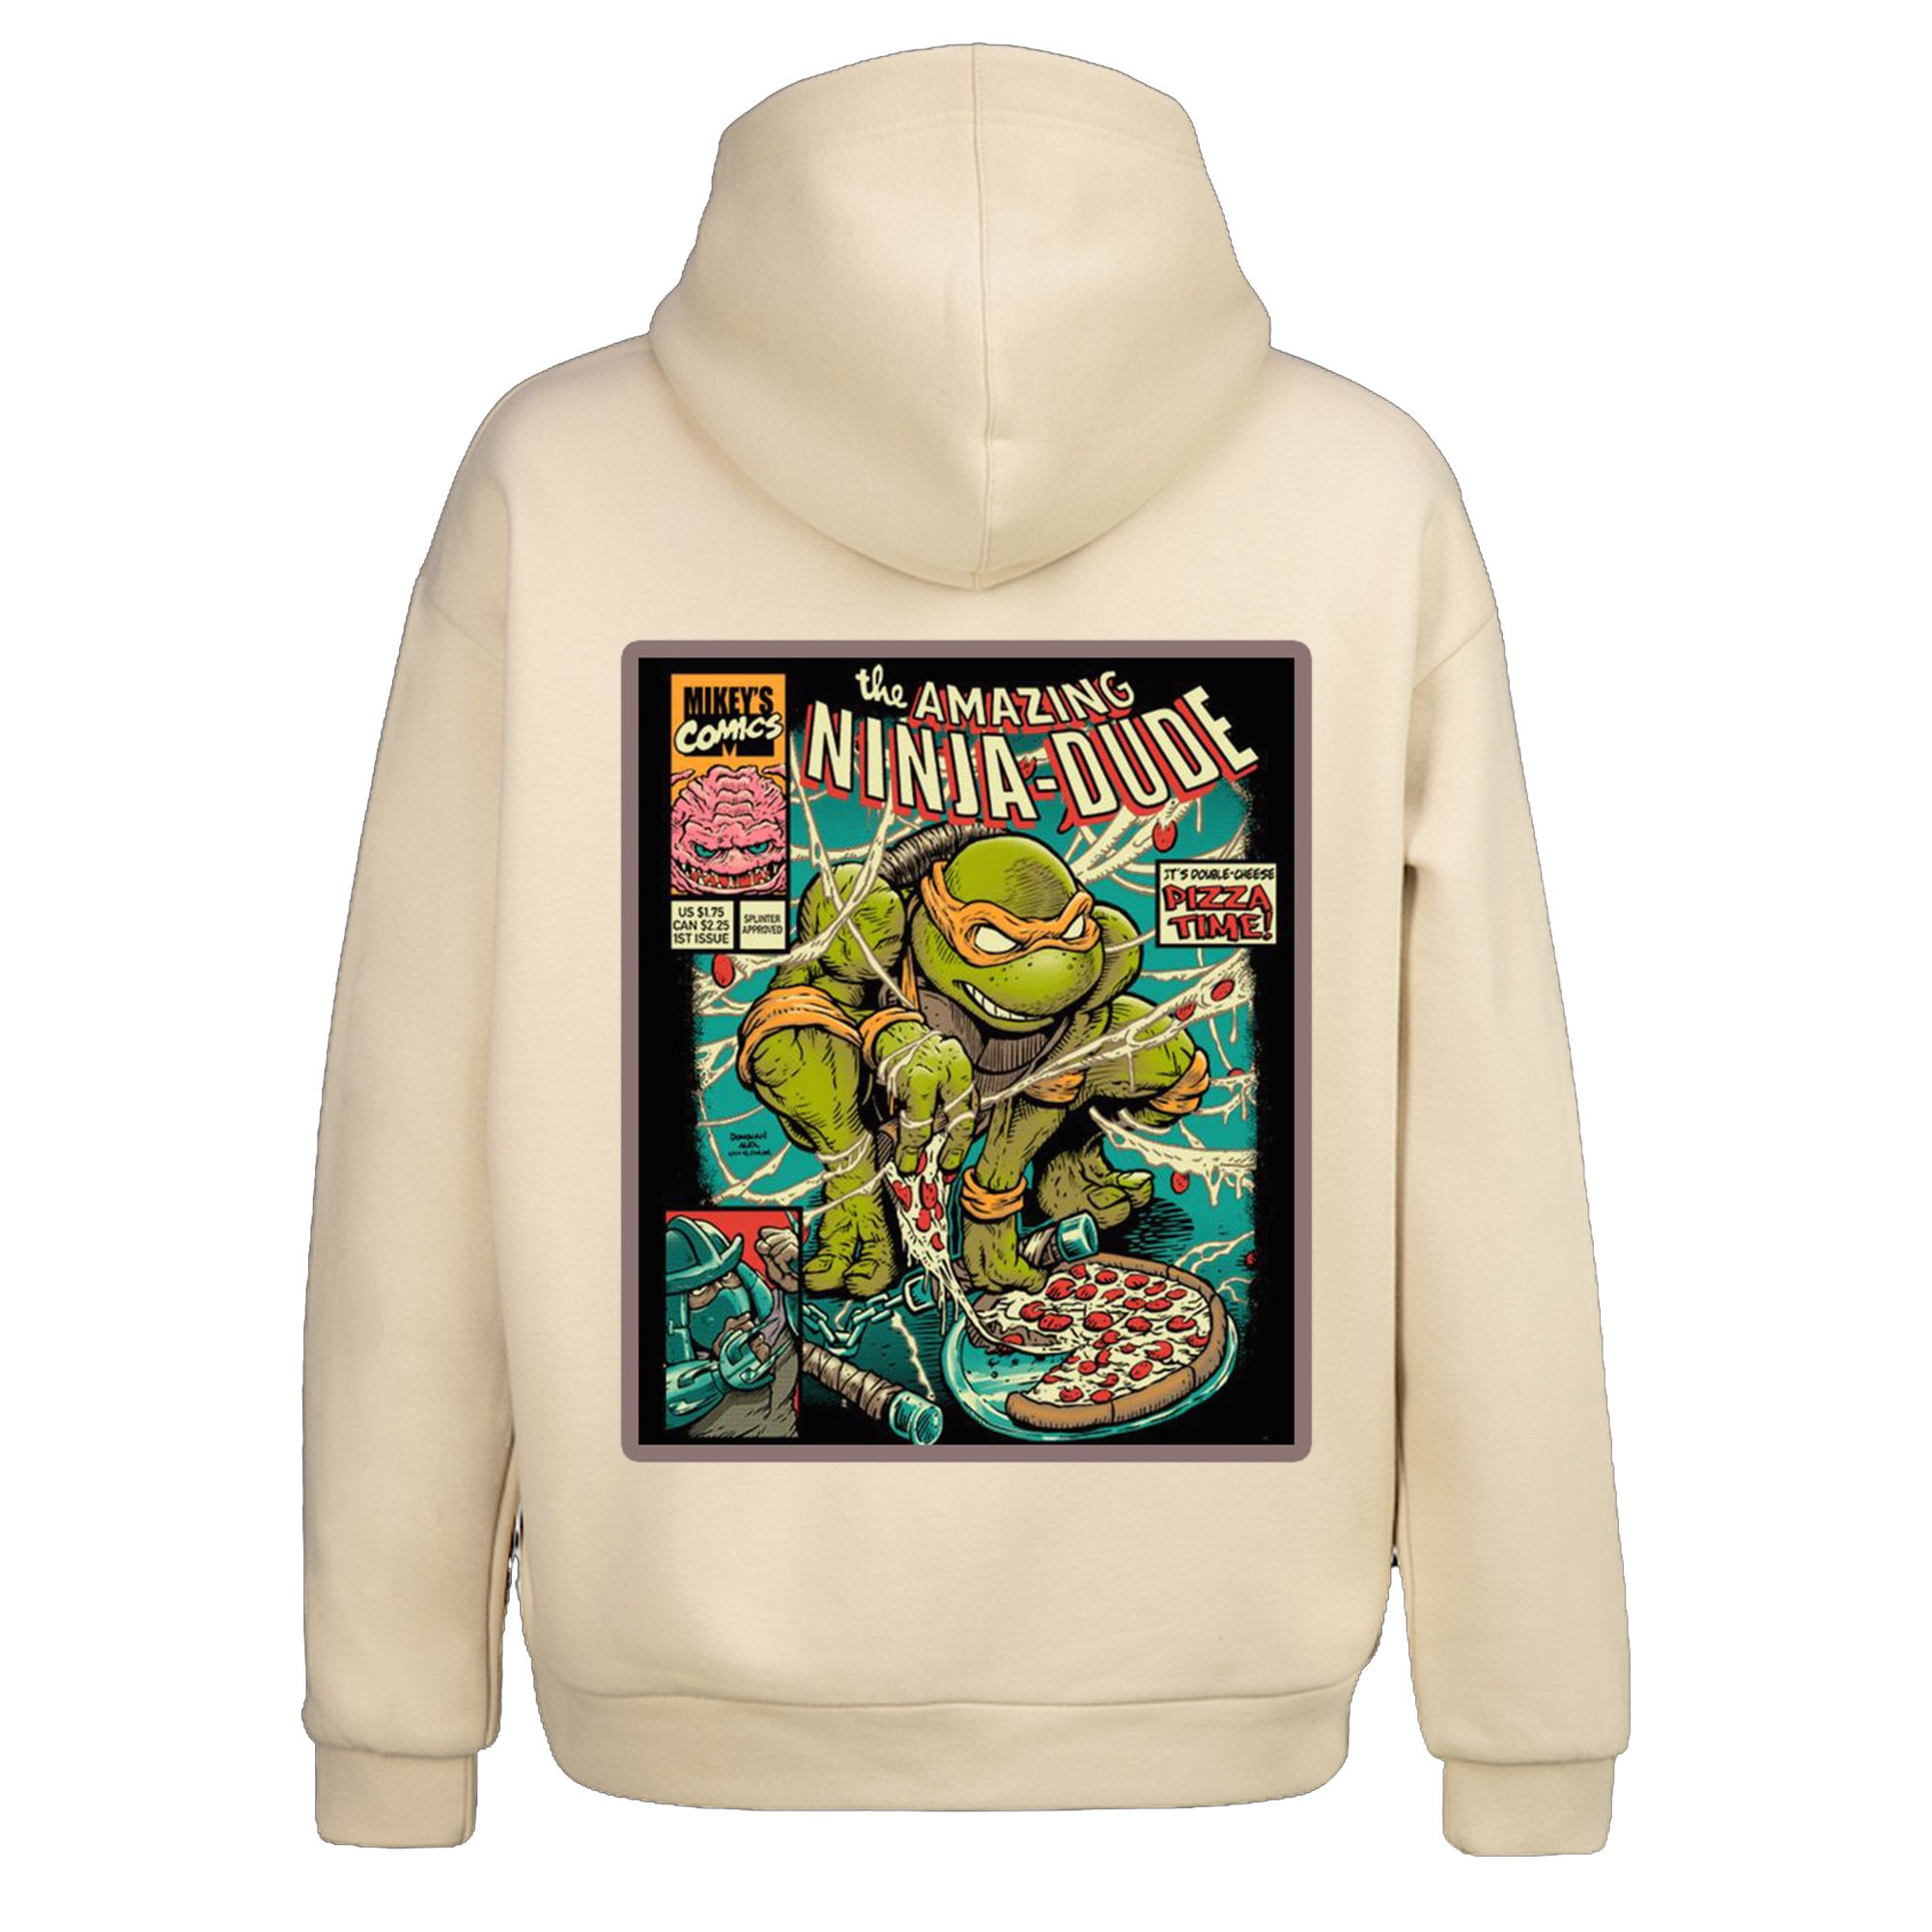 New Teenage Mutant Ninja Turtles Shirts Draw Inspiration From JUDAS PRIEST  & MOTÖRHEAD